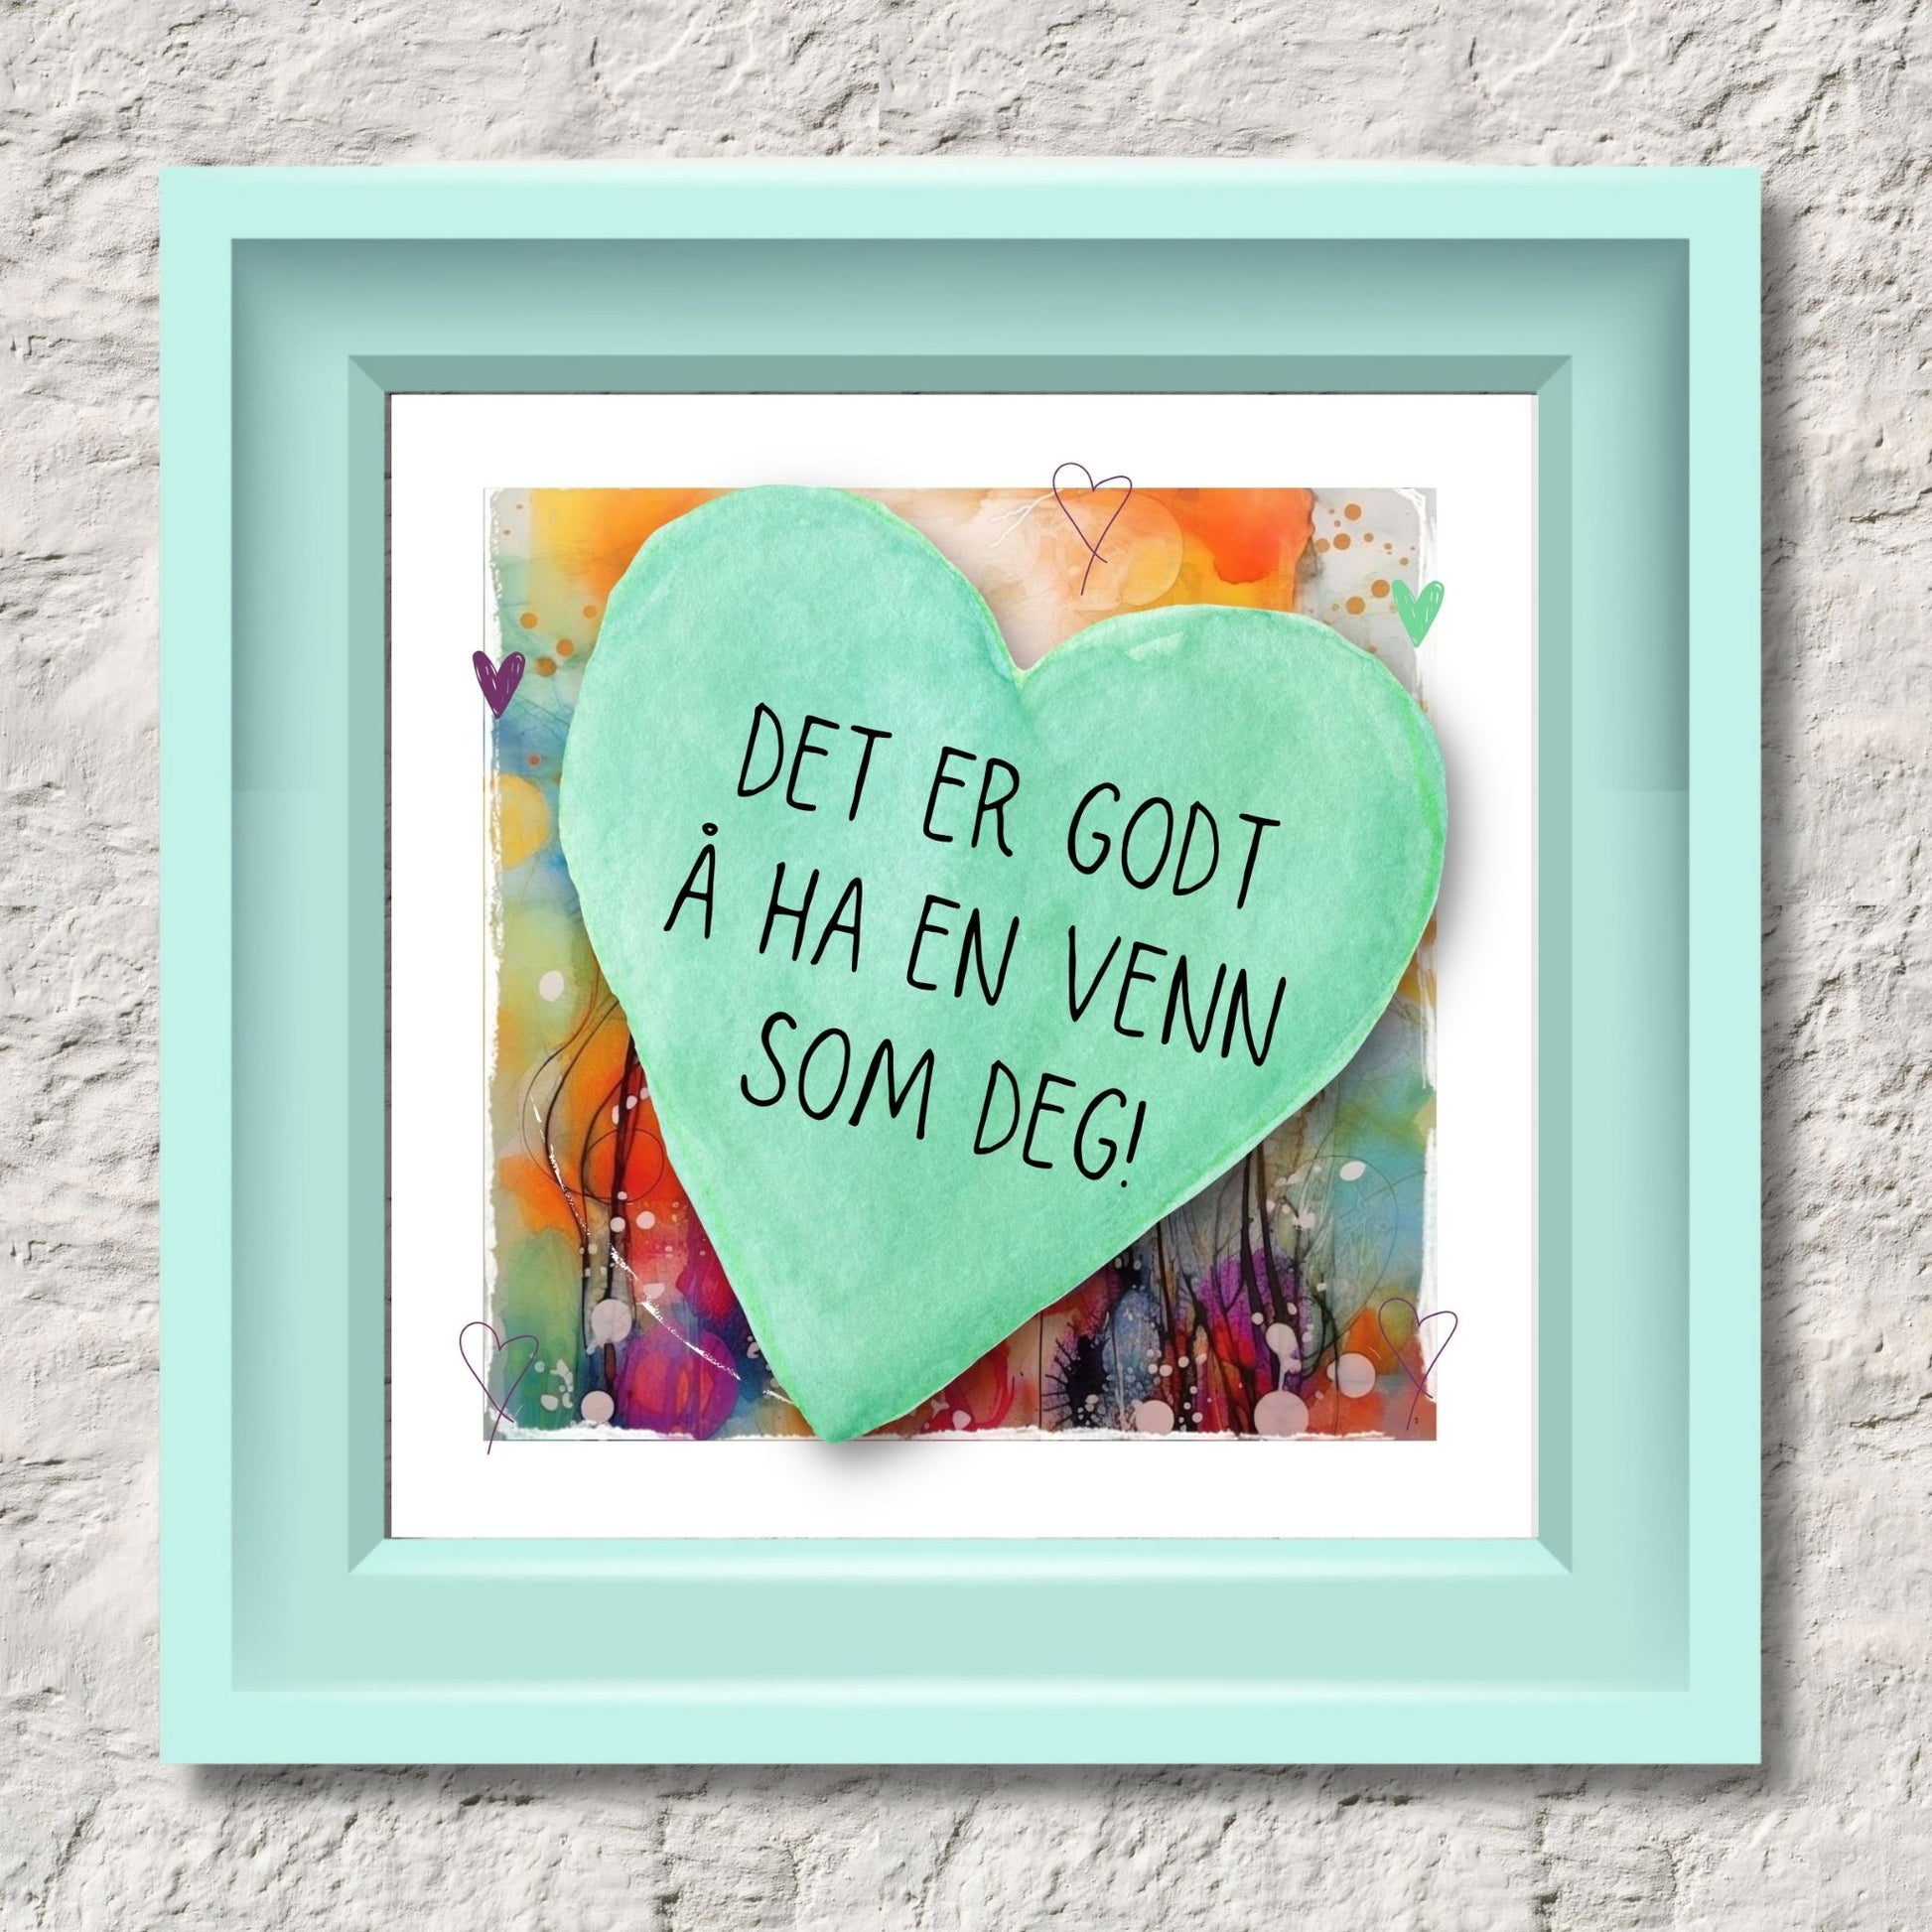 Plakat med lysegrønt hjerte og tekst "Det er godt å ha en venn som deg" - og et motiv med farger i grønn, blått og oransje. Med hvit kant på 1,5 cm. Illustrasjon viser plakat i lysegrønt ramme.